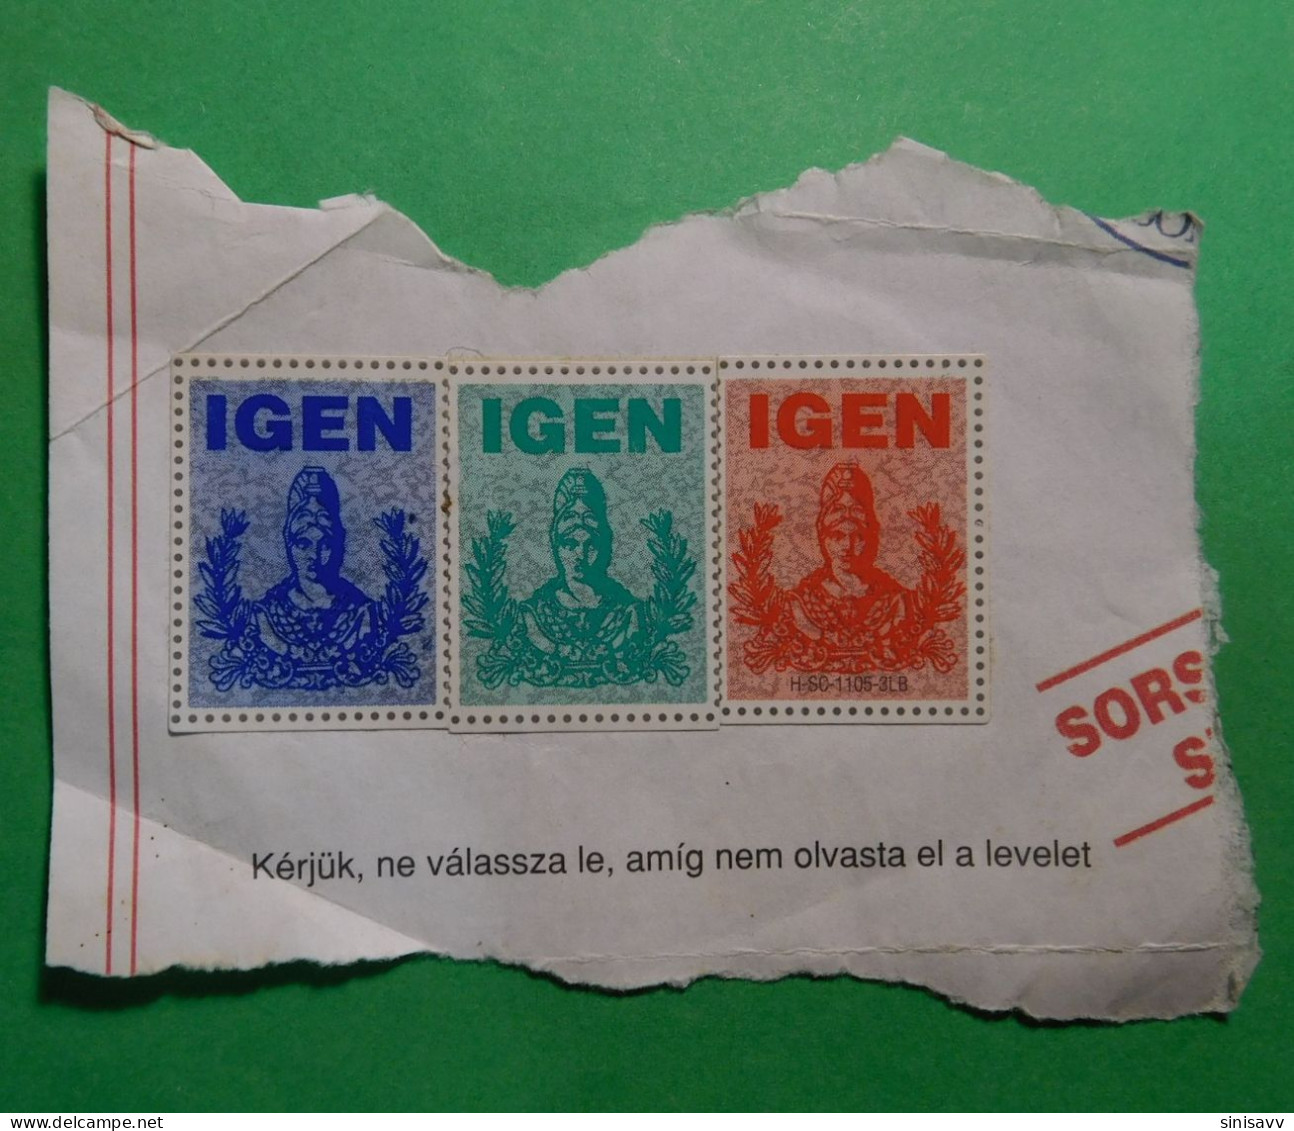 Vignette - Sticker - IGEN - Steuermarken